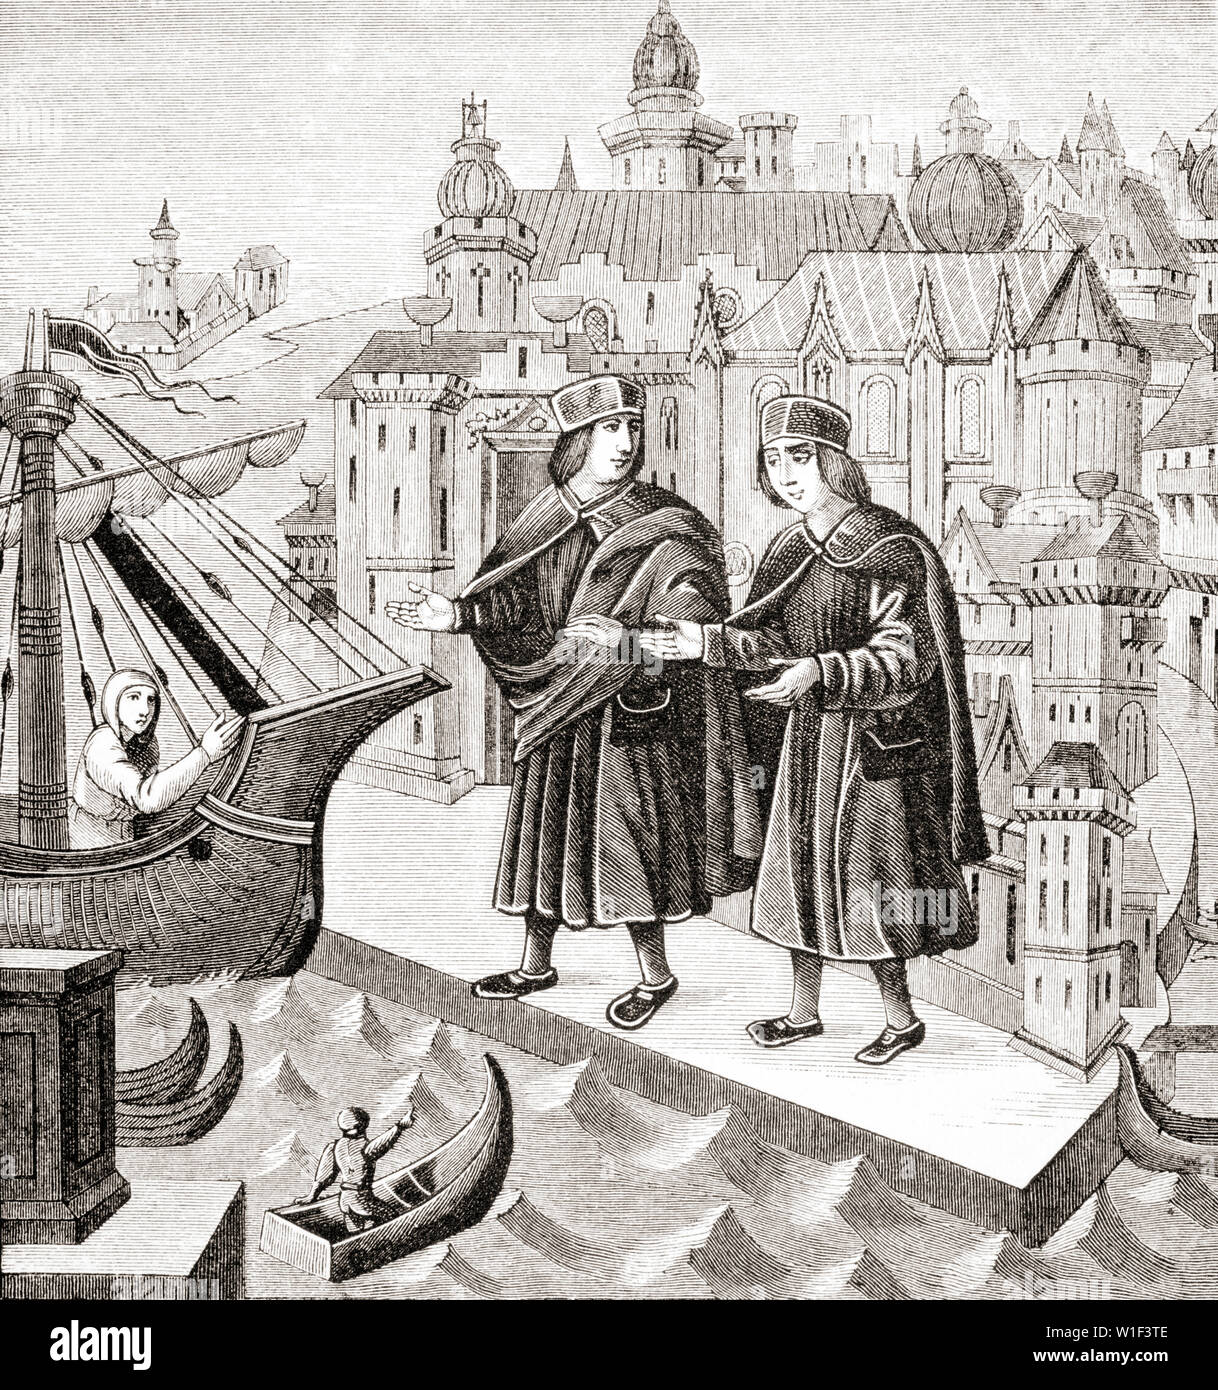 Commerce sur les ports du Levant. Après une miniature dans un manuscrit du 15e siècle des voyages de Marco Polo Banque D'Images